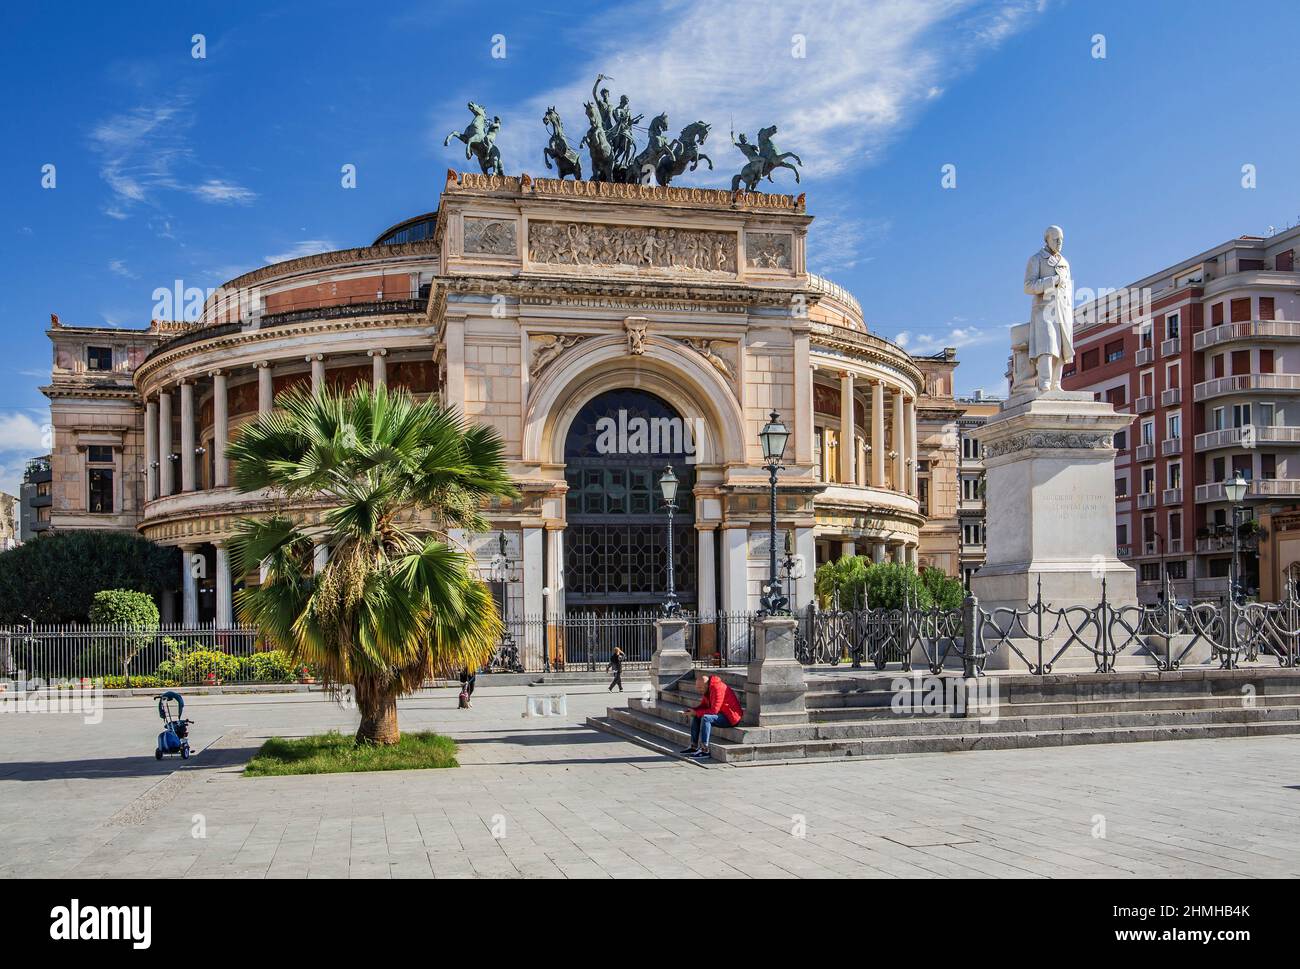 Politeama Garibaldi theater in Piazza Ruggero Settimo, Palermo, Sicily, Italy Stock Photo